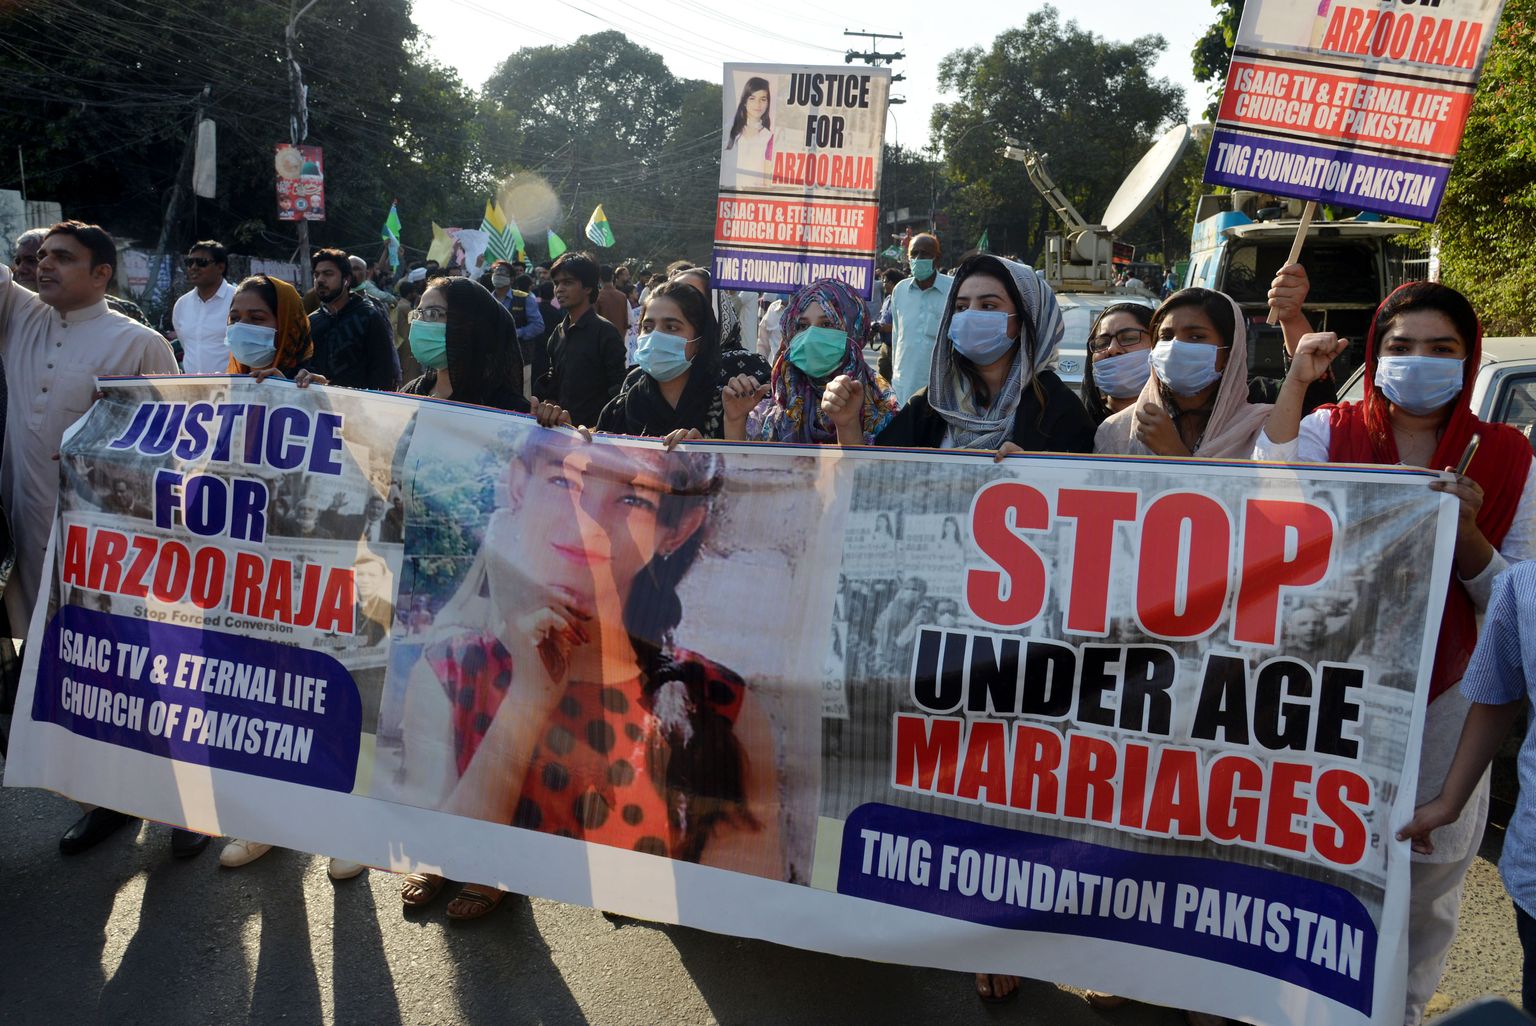 Pakistanis röövitakse aastas tuhat usuvähemuste hulka kuuluvat tüdrukut ja naist. Eelmise aasta oktoobris protesteerisid Pakistani kristlased 13-aastase Arzoo Raja kinnivõtmise vastu, kelle vangistaja vabastati kautsjoni vastu. Raja on vaid üks paljudest ohvritest.